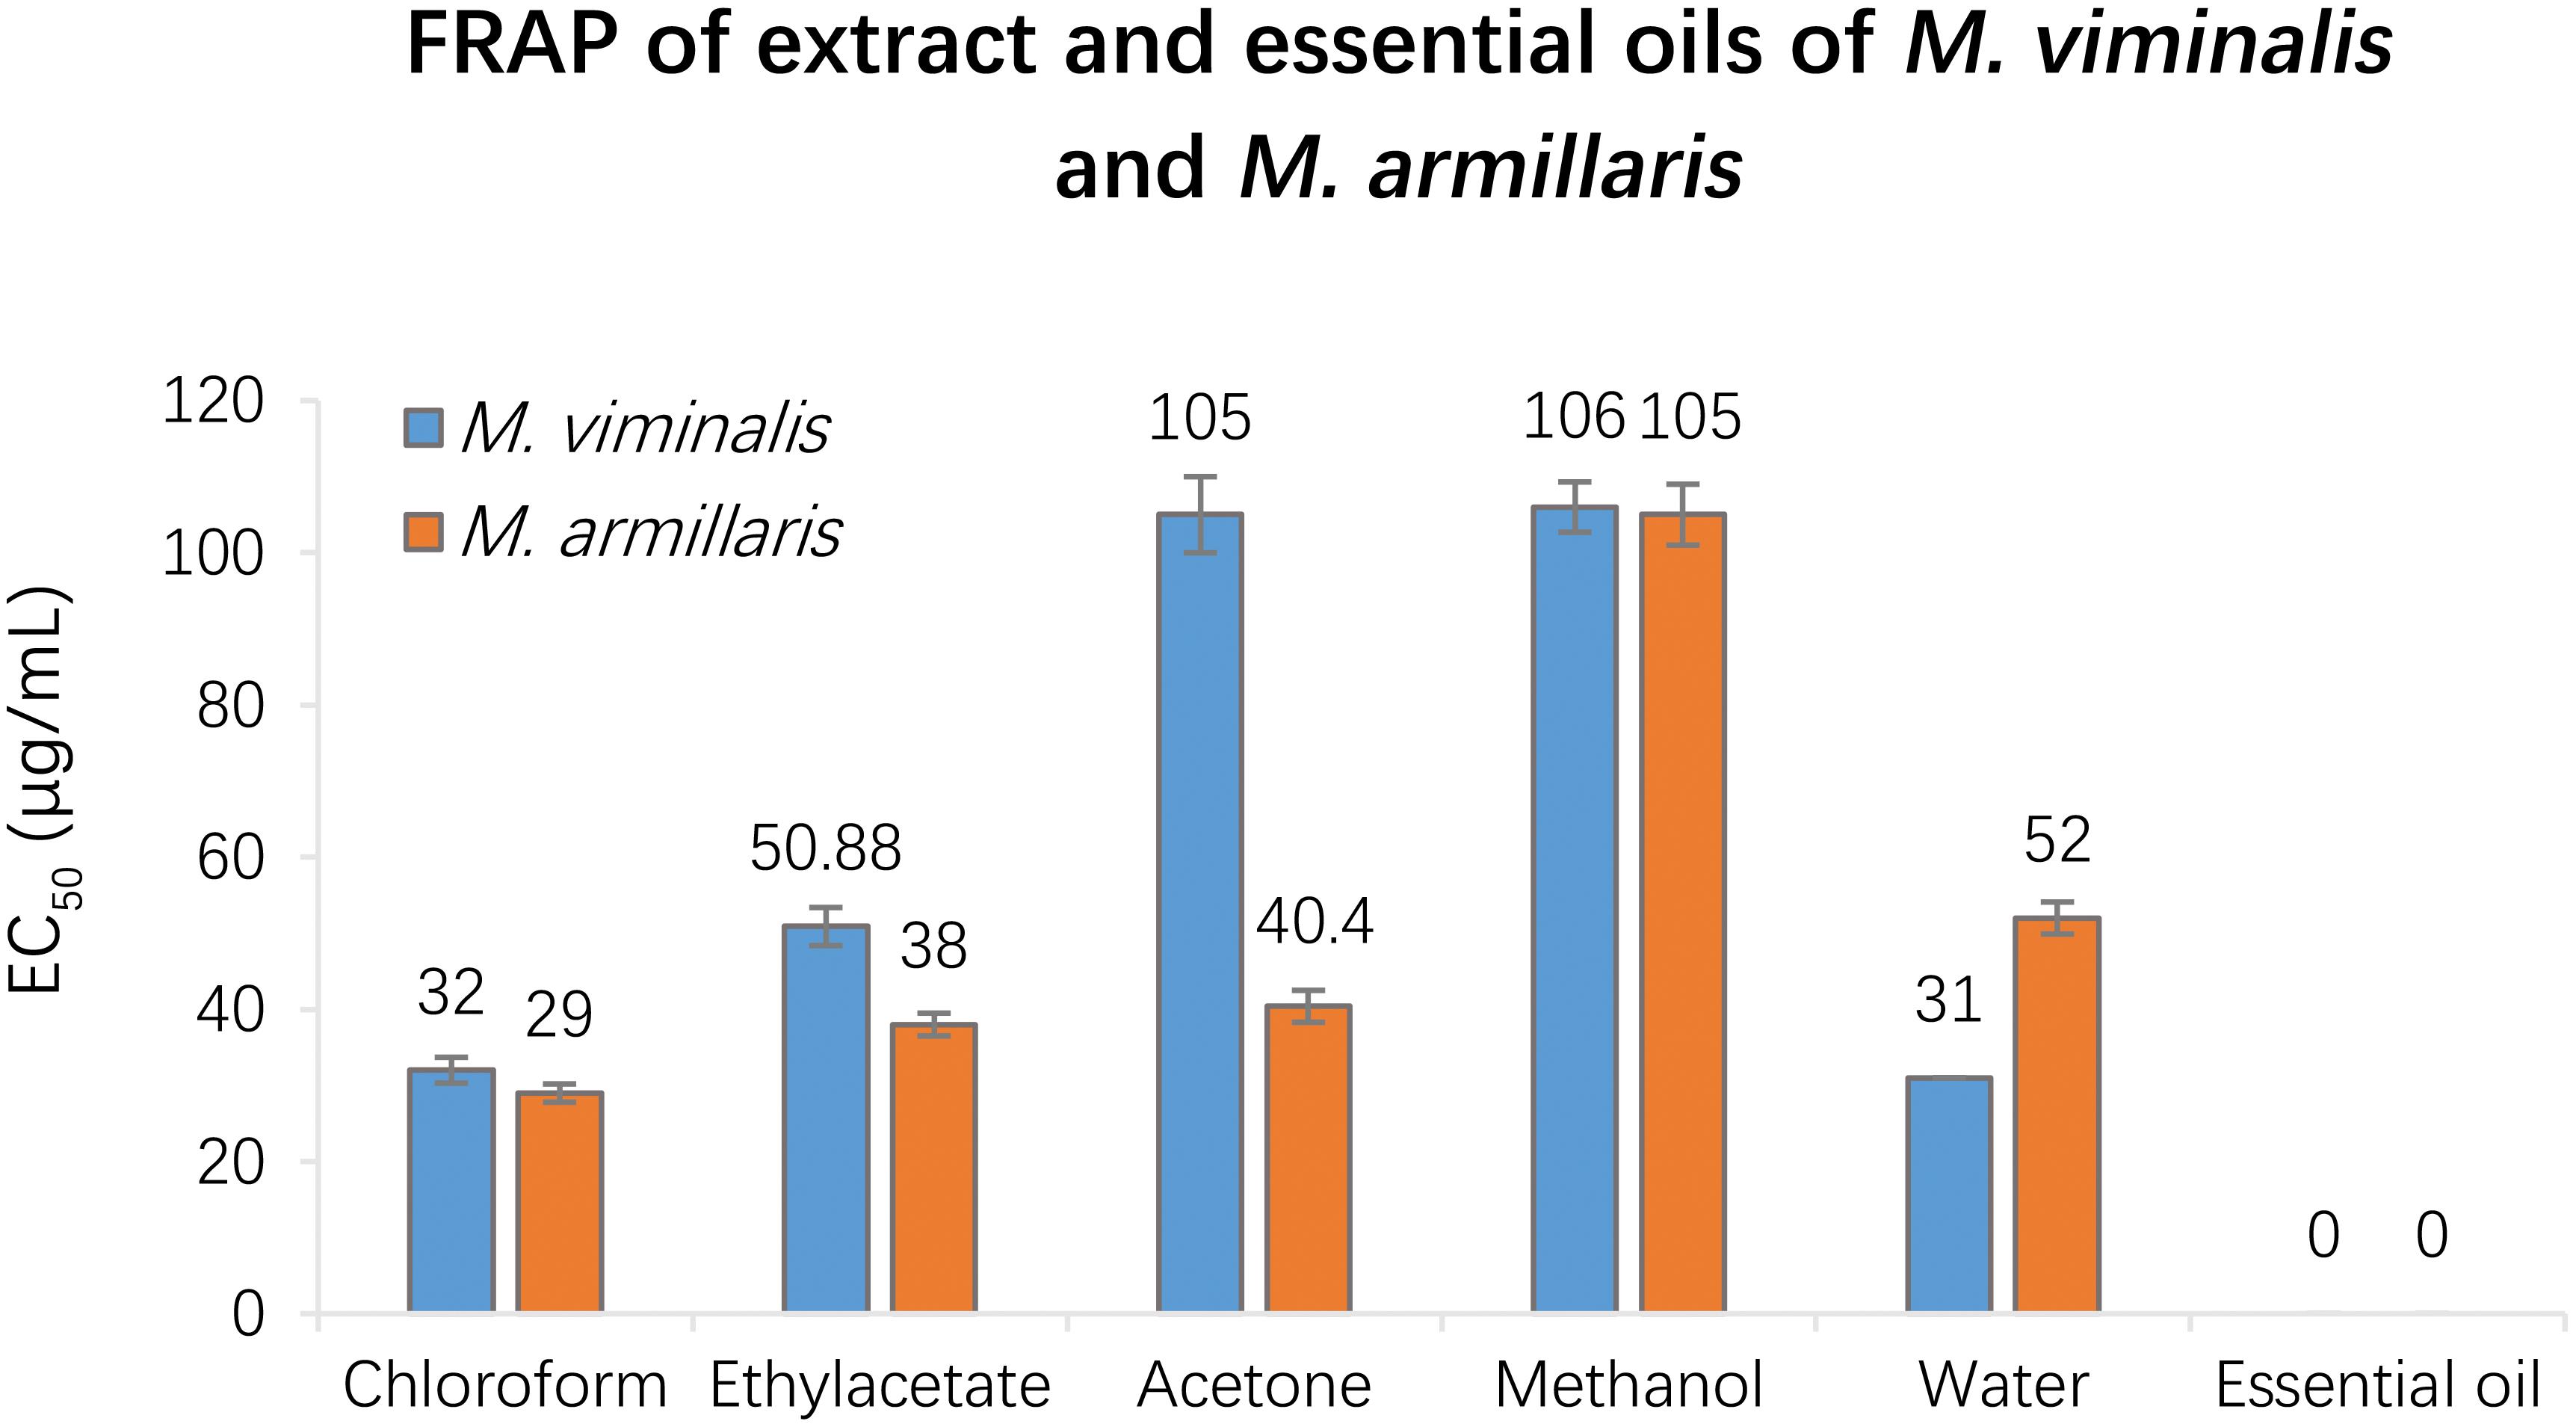 FRAP of extracts and essential oils of <italic>M. viminalis and M. armillaris.</italic>